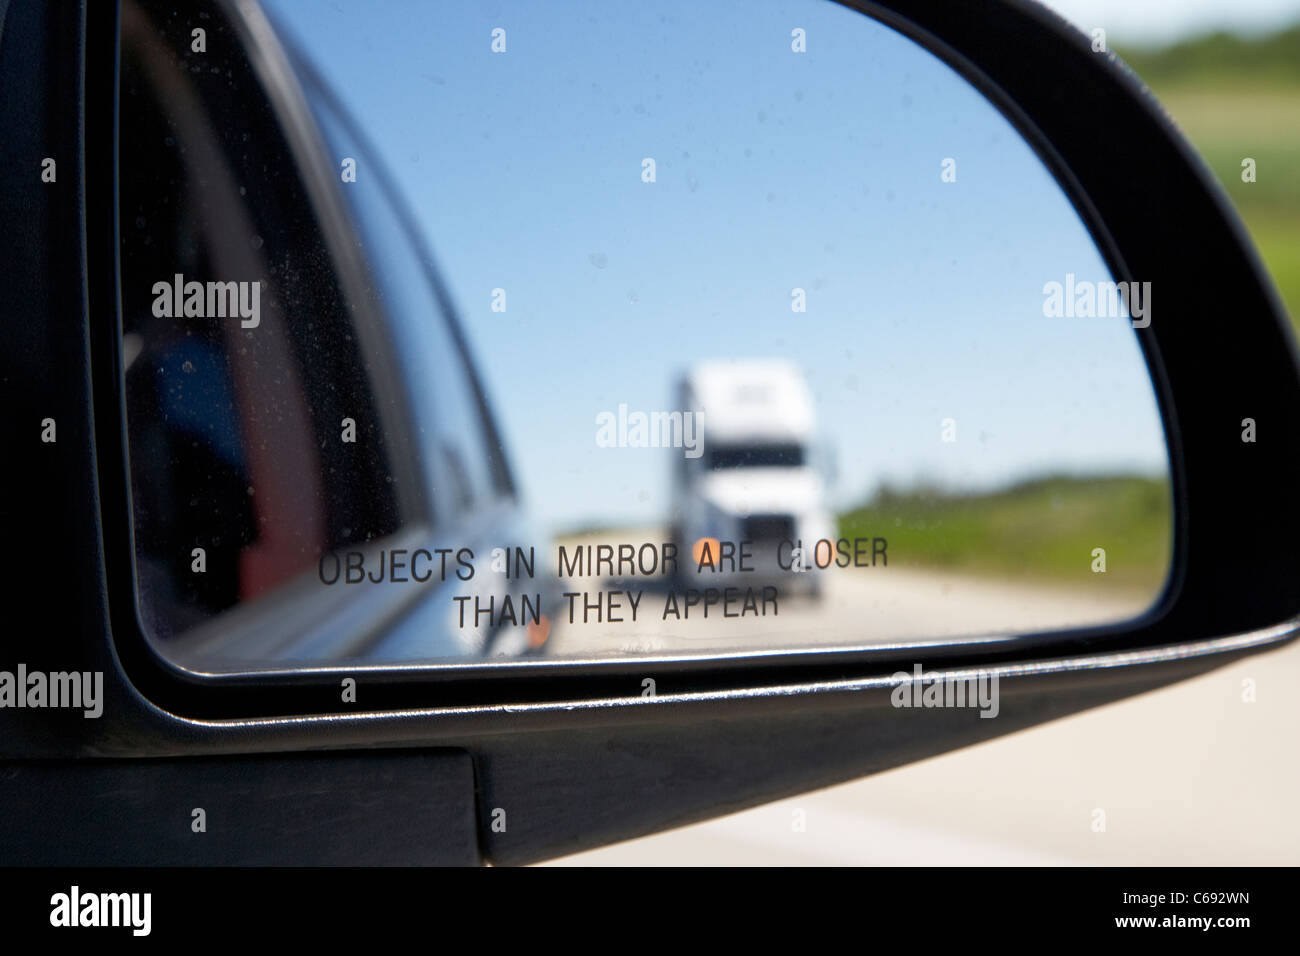 Objekte in Spiegel sind näher, als sie im Auto Außenspiegel Außenspiegel erscheinen mit Lkw auf der Autobahn Kanada Stockfoto